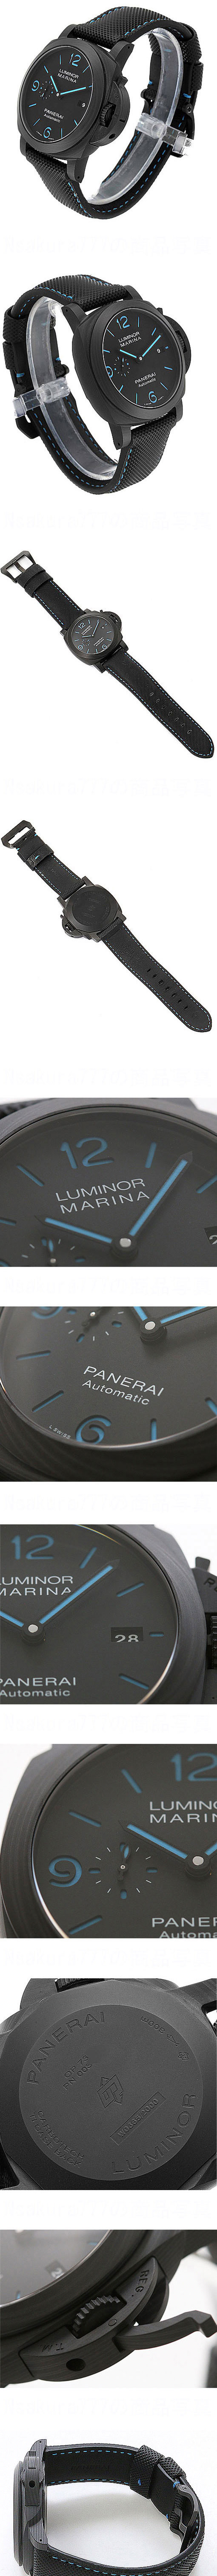 【新着商品】パネライコピー時計 ルミノールマリーナ カーボテック PAM01661 